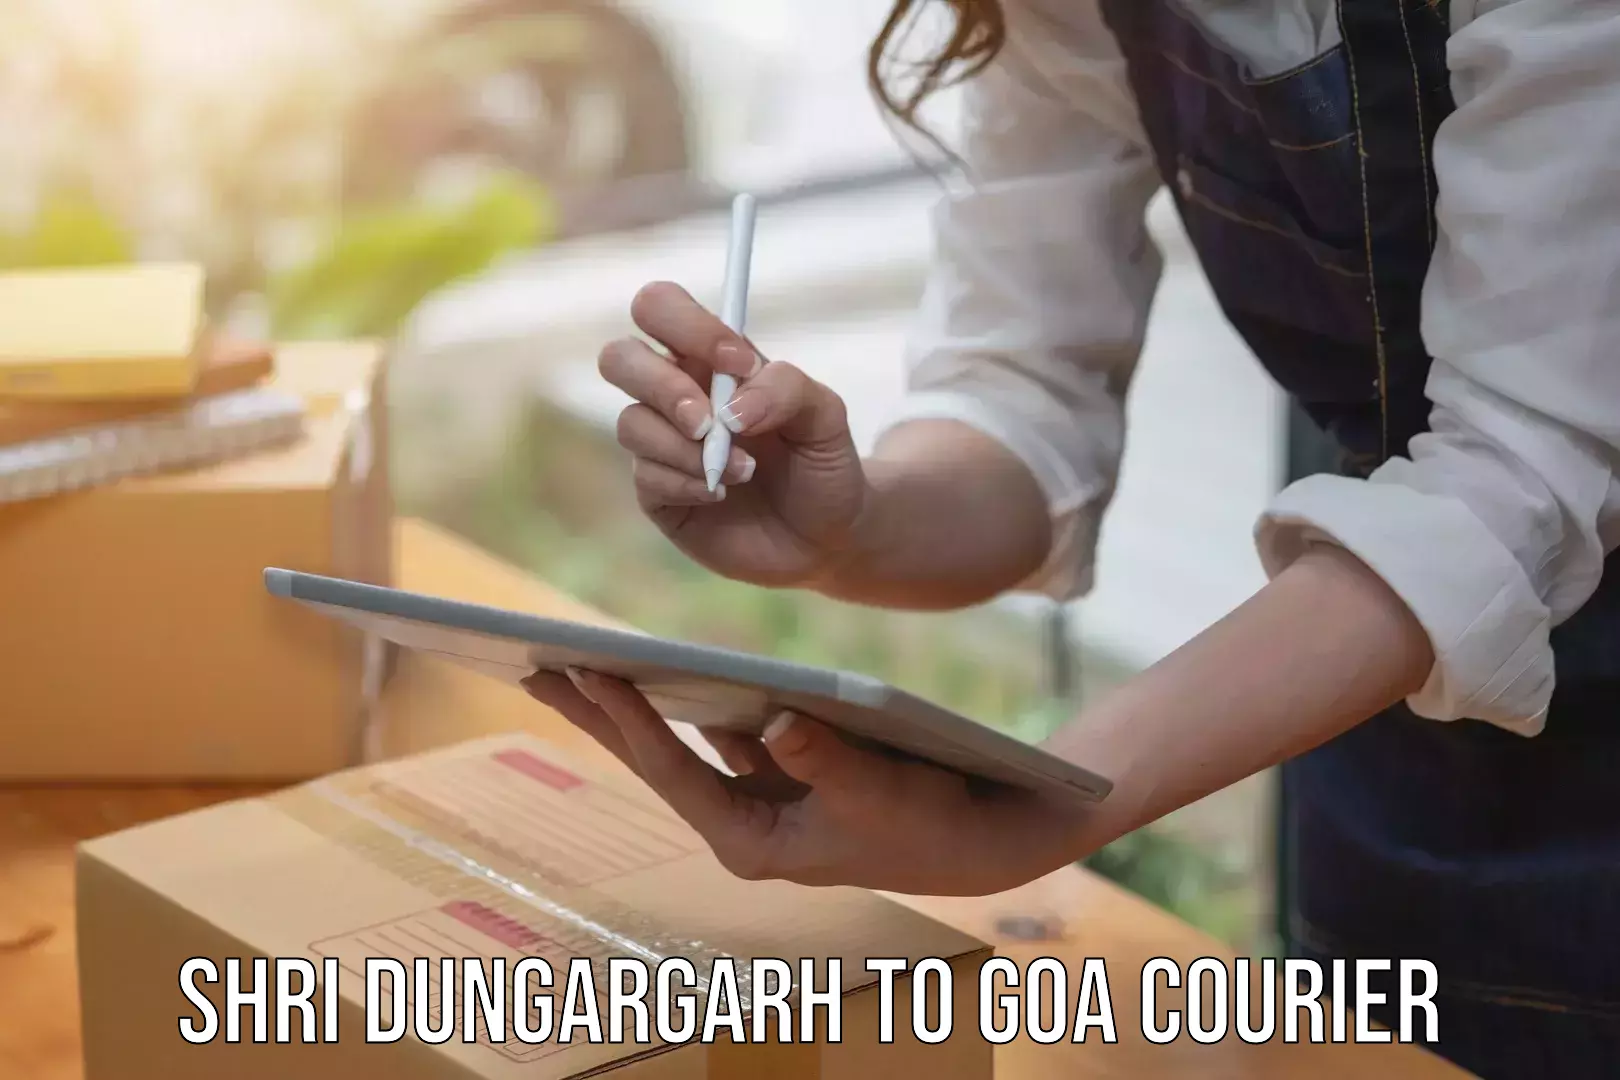 Courier app Shri Dungargarh to South Goa